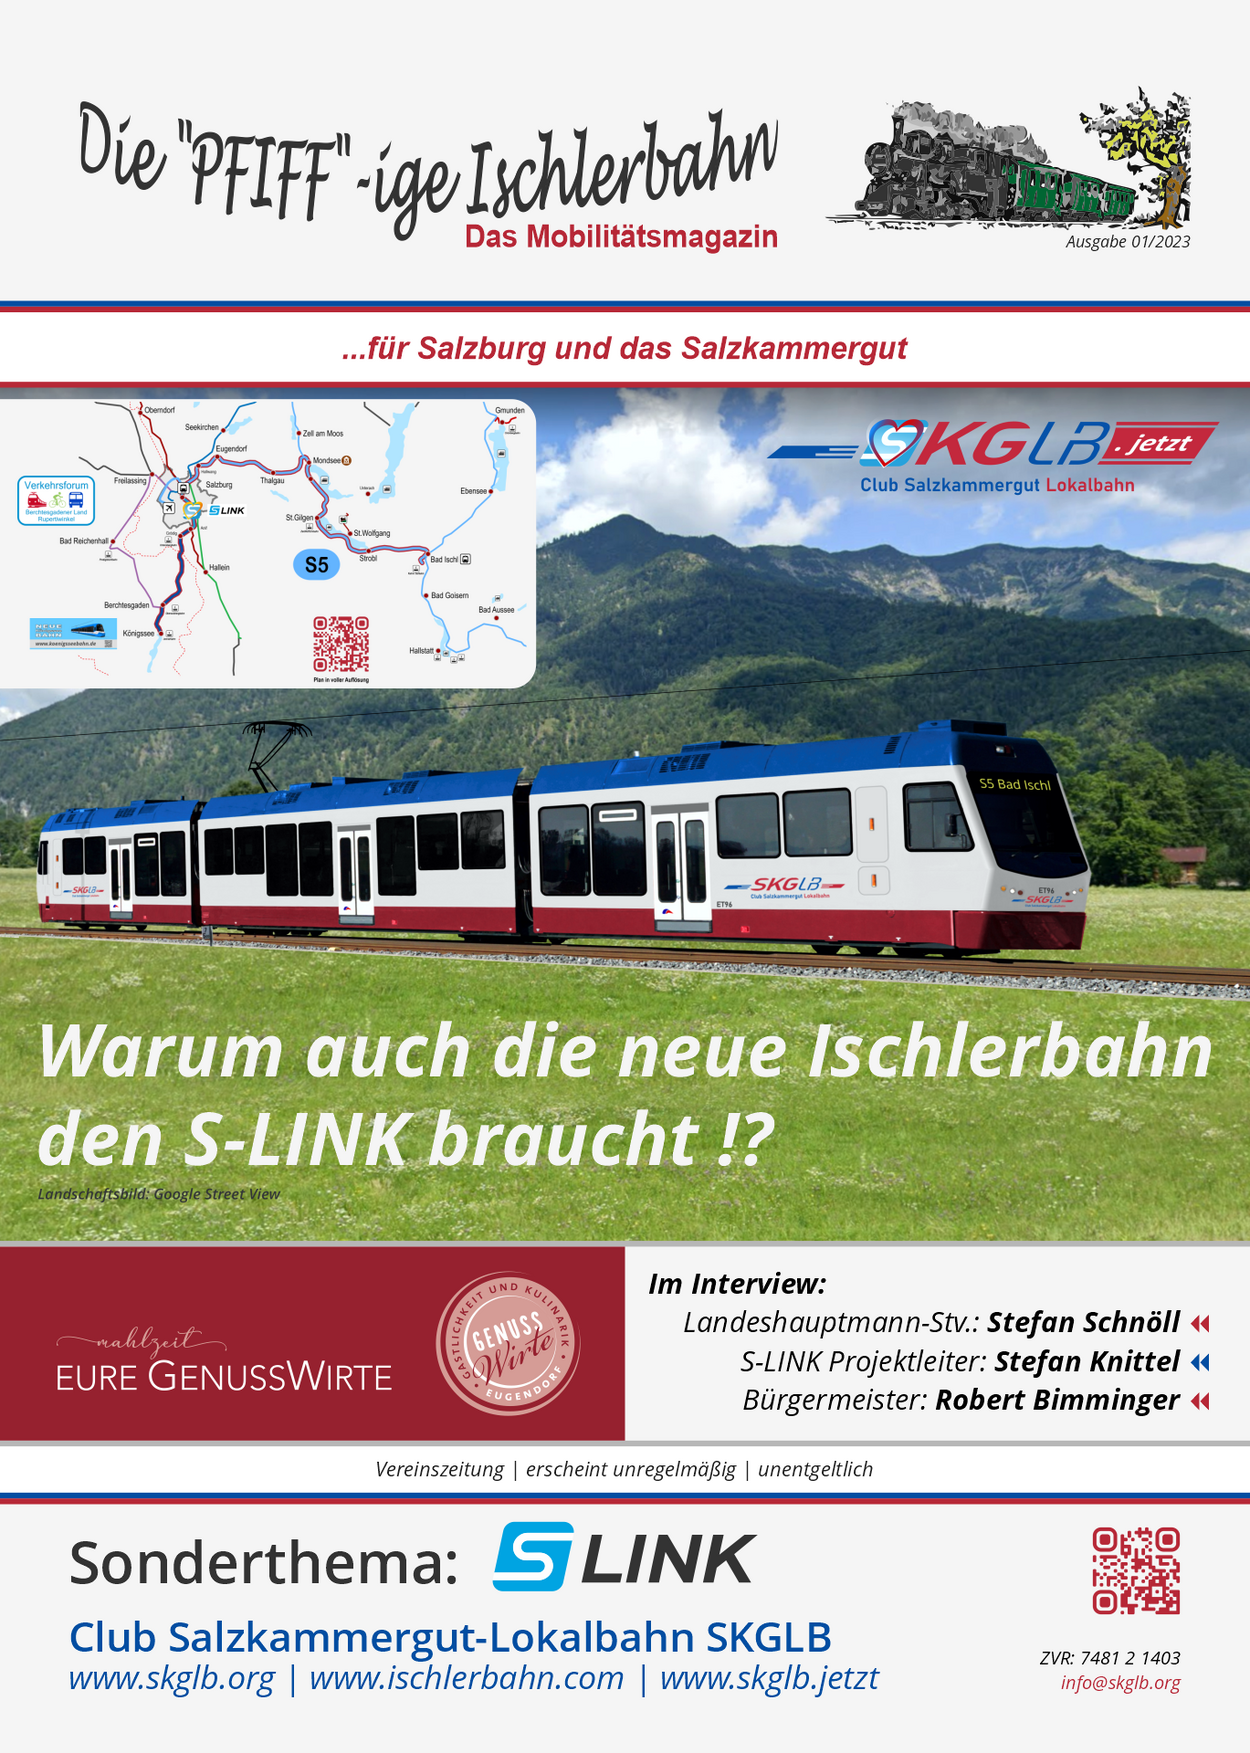 Die neue Ausgabe der "PFIFF"-igen Ischlerbahn"